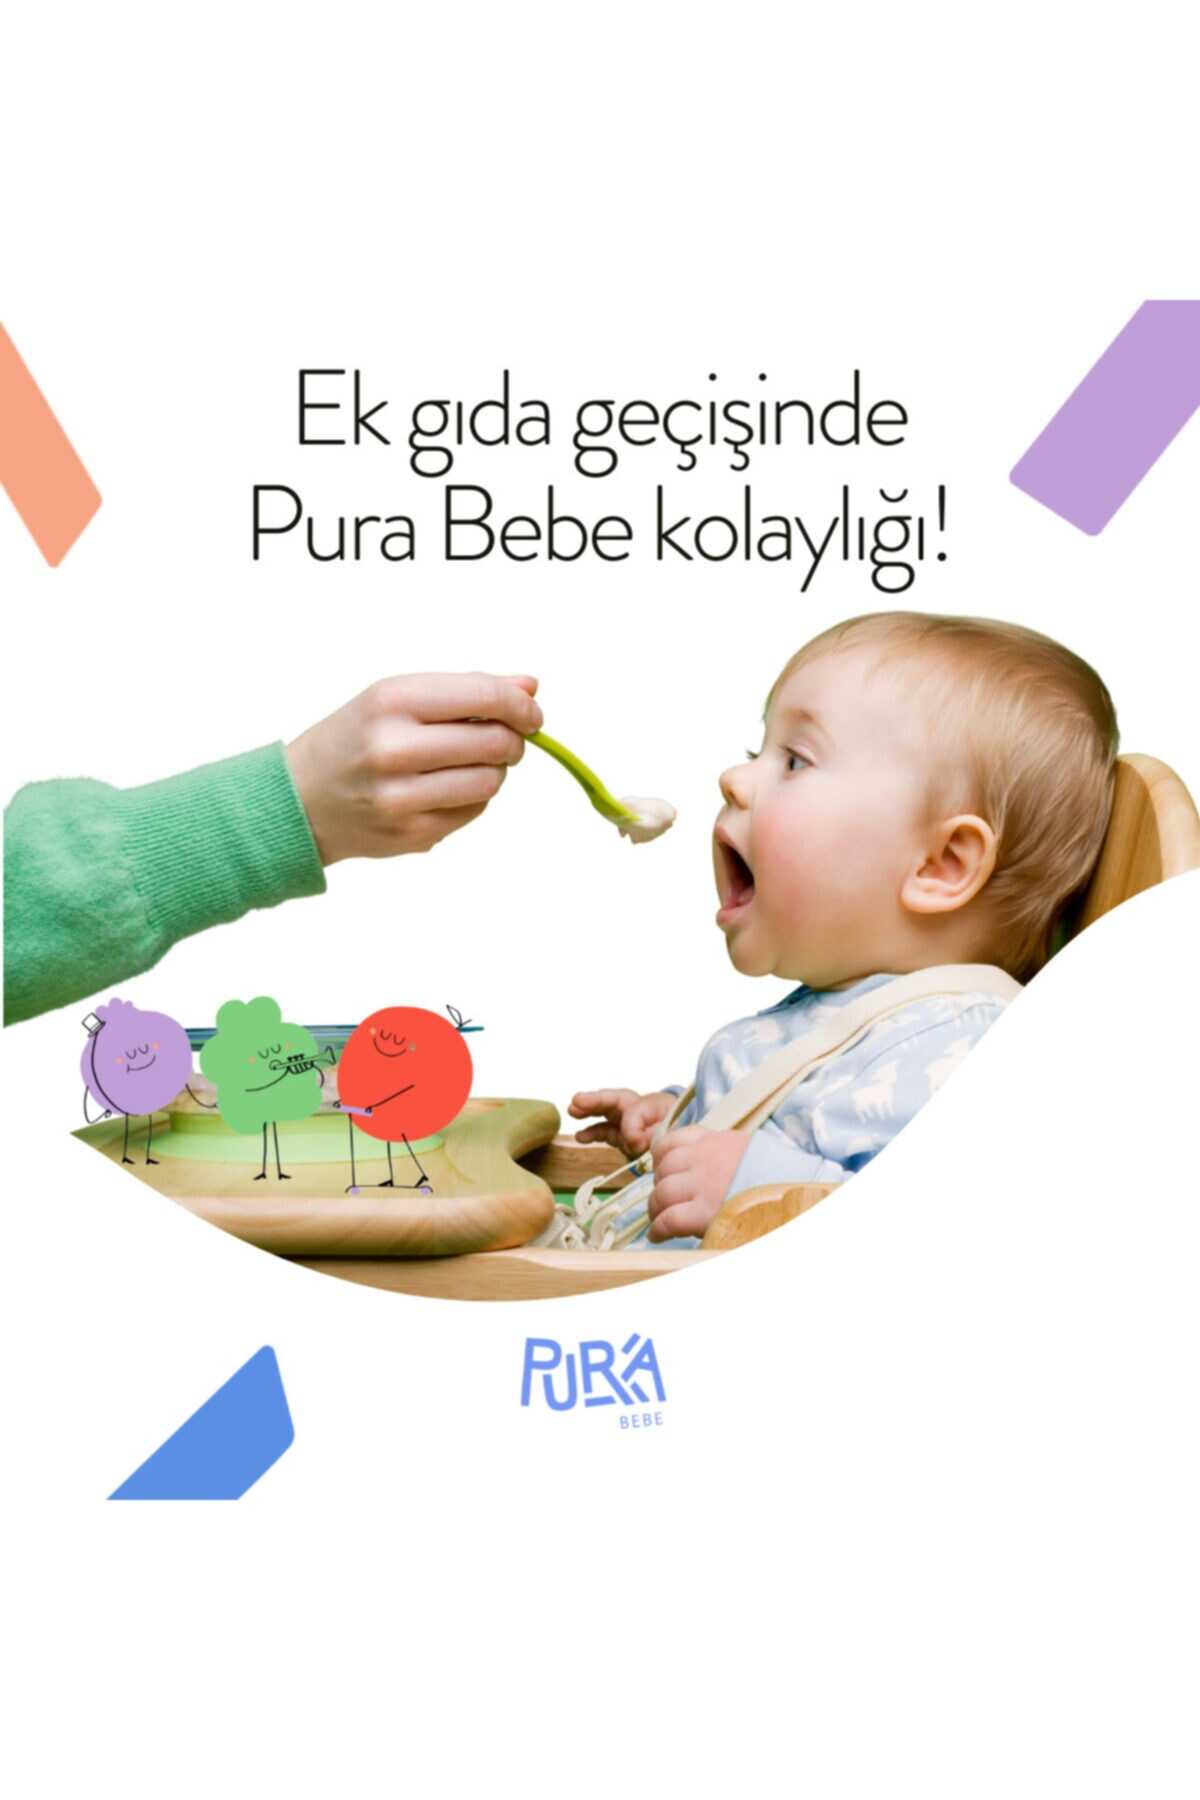 پوره سیب دارچین ارگانیک کودک 1 جعبه (3 قسمت) برند Pura Bebe